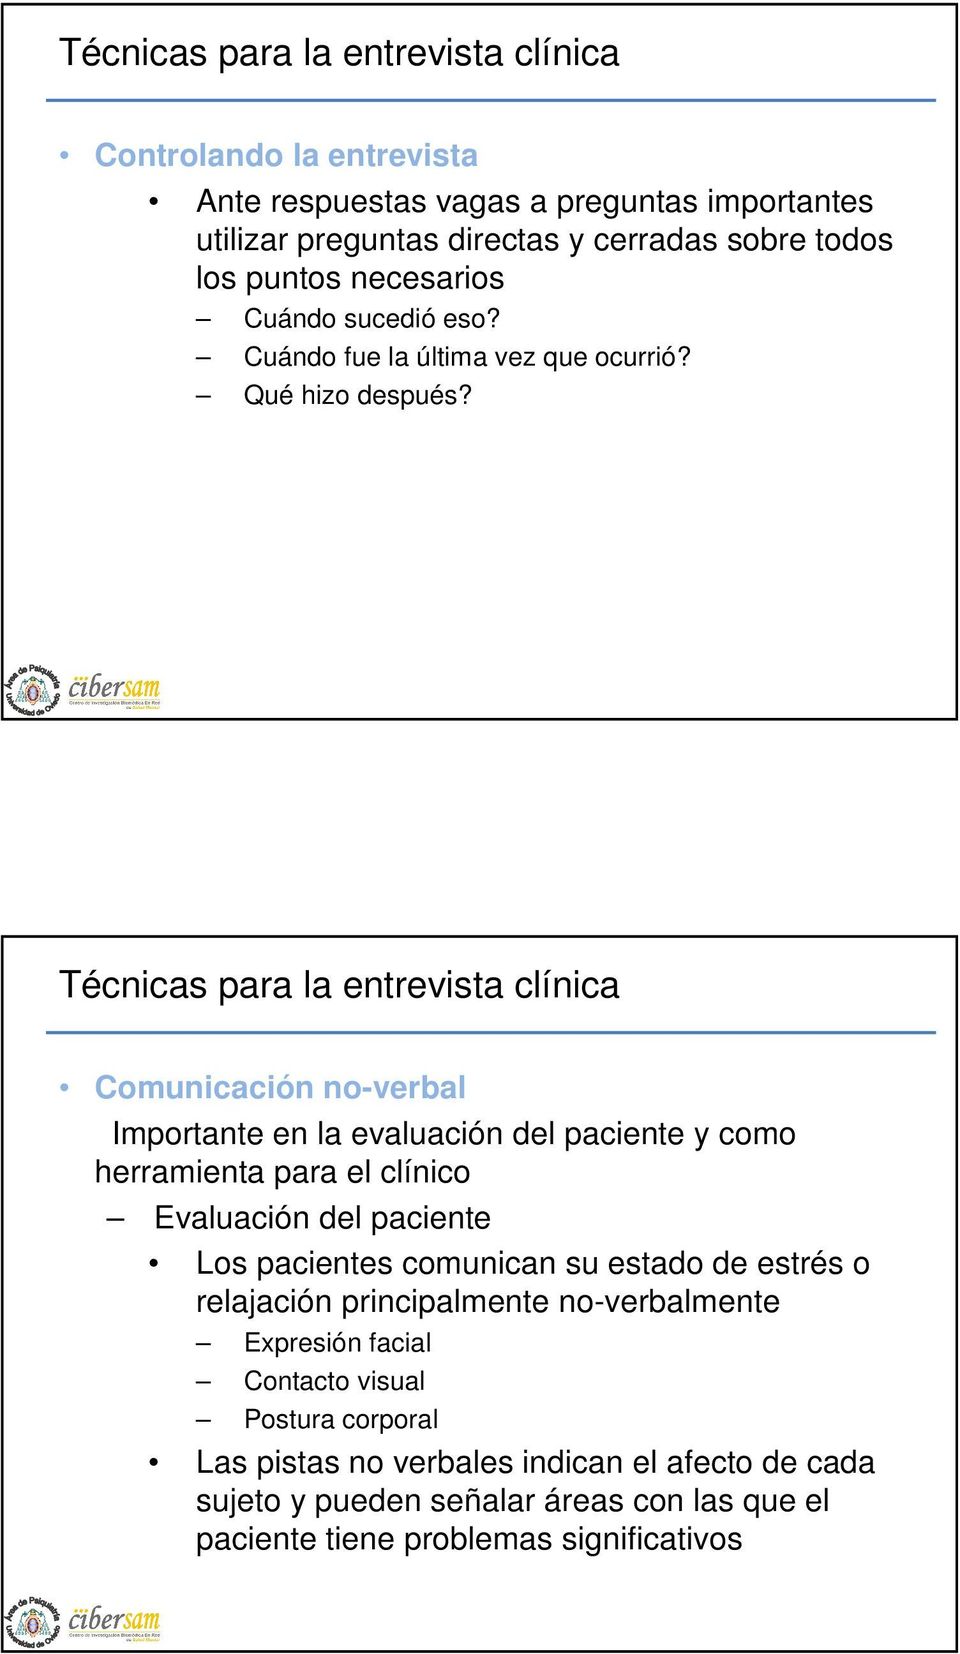 Comunicación no-verbal Importante en la evaluación del paciente y como herramienta para el clínico Evaluación del paciente Los pacientes comunican su